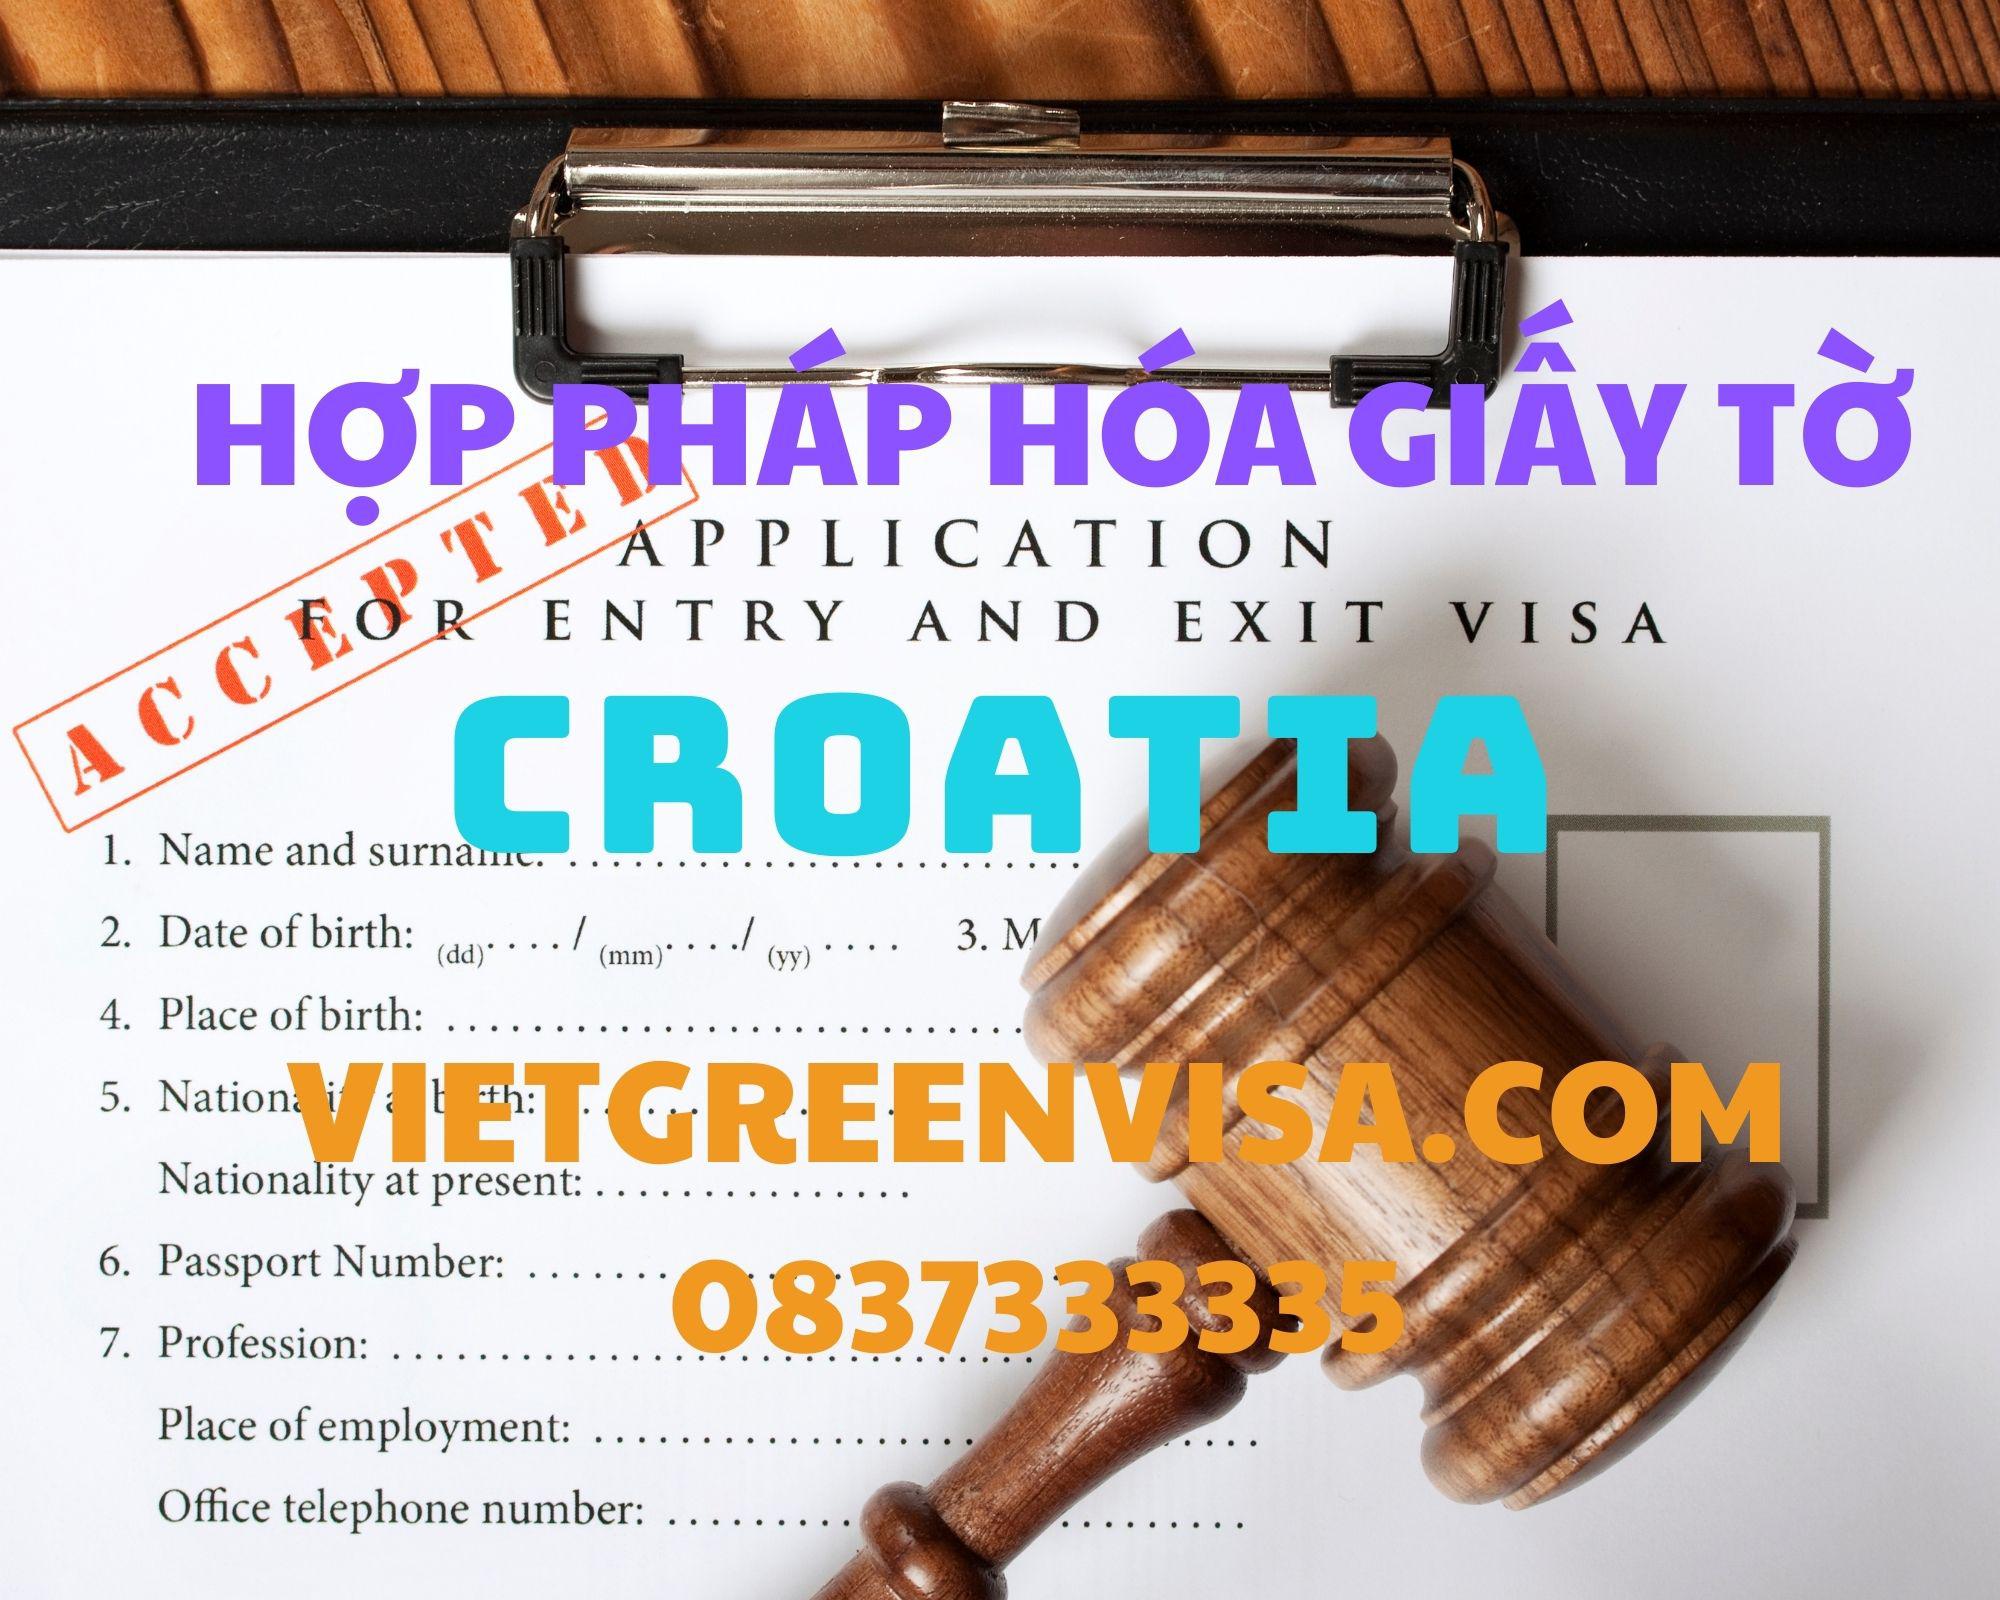  Dịch vụ hợp pháp hóa giấy tờ tại Croatia trọn gói